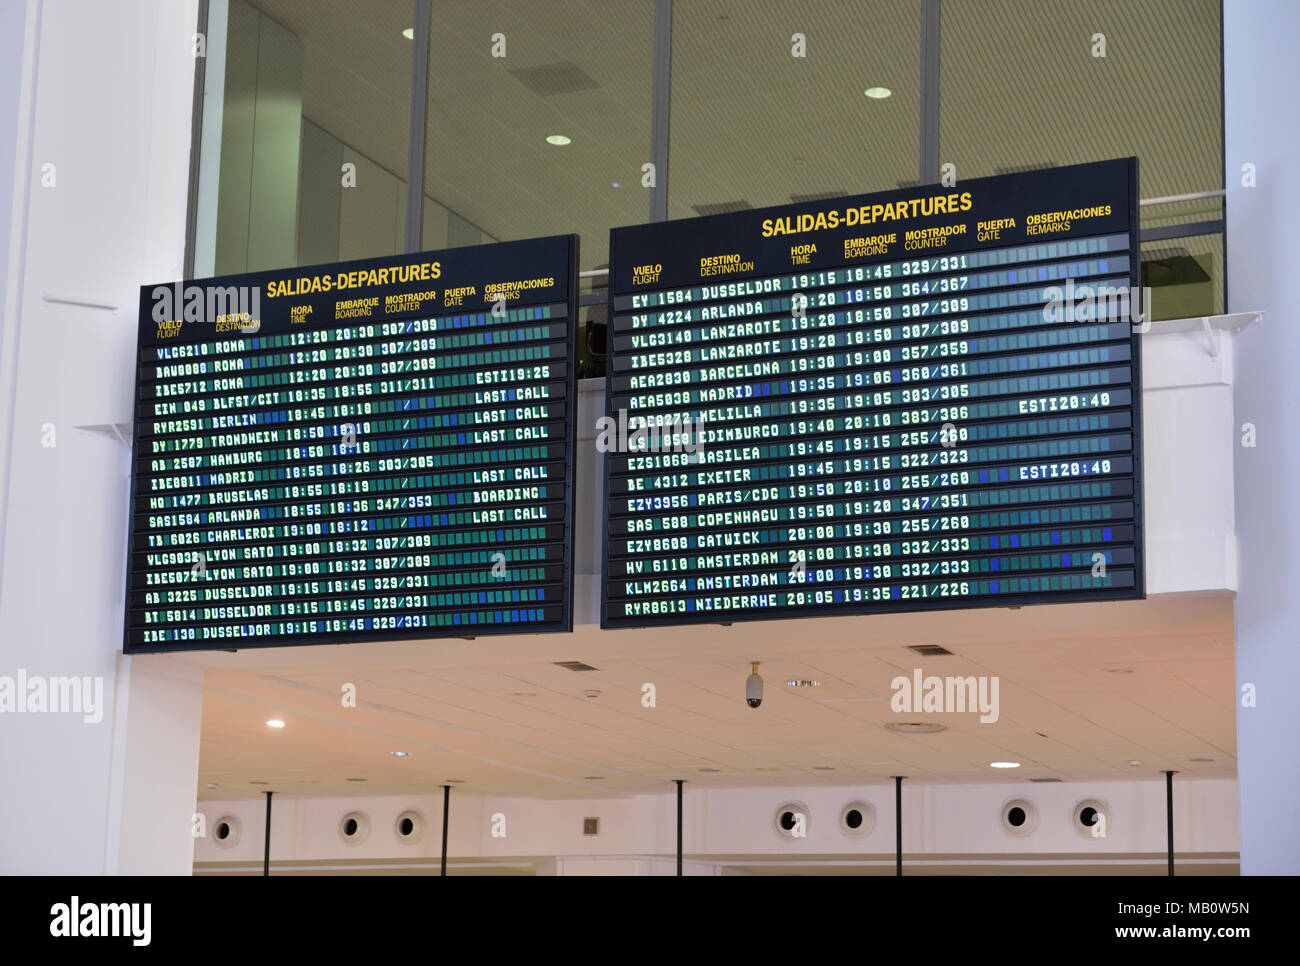 Malaga-Costa del Sol Airport, Malaga Spain Stock Photo